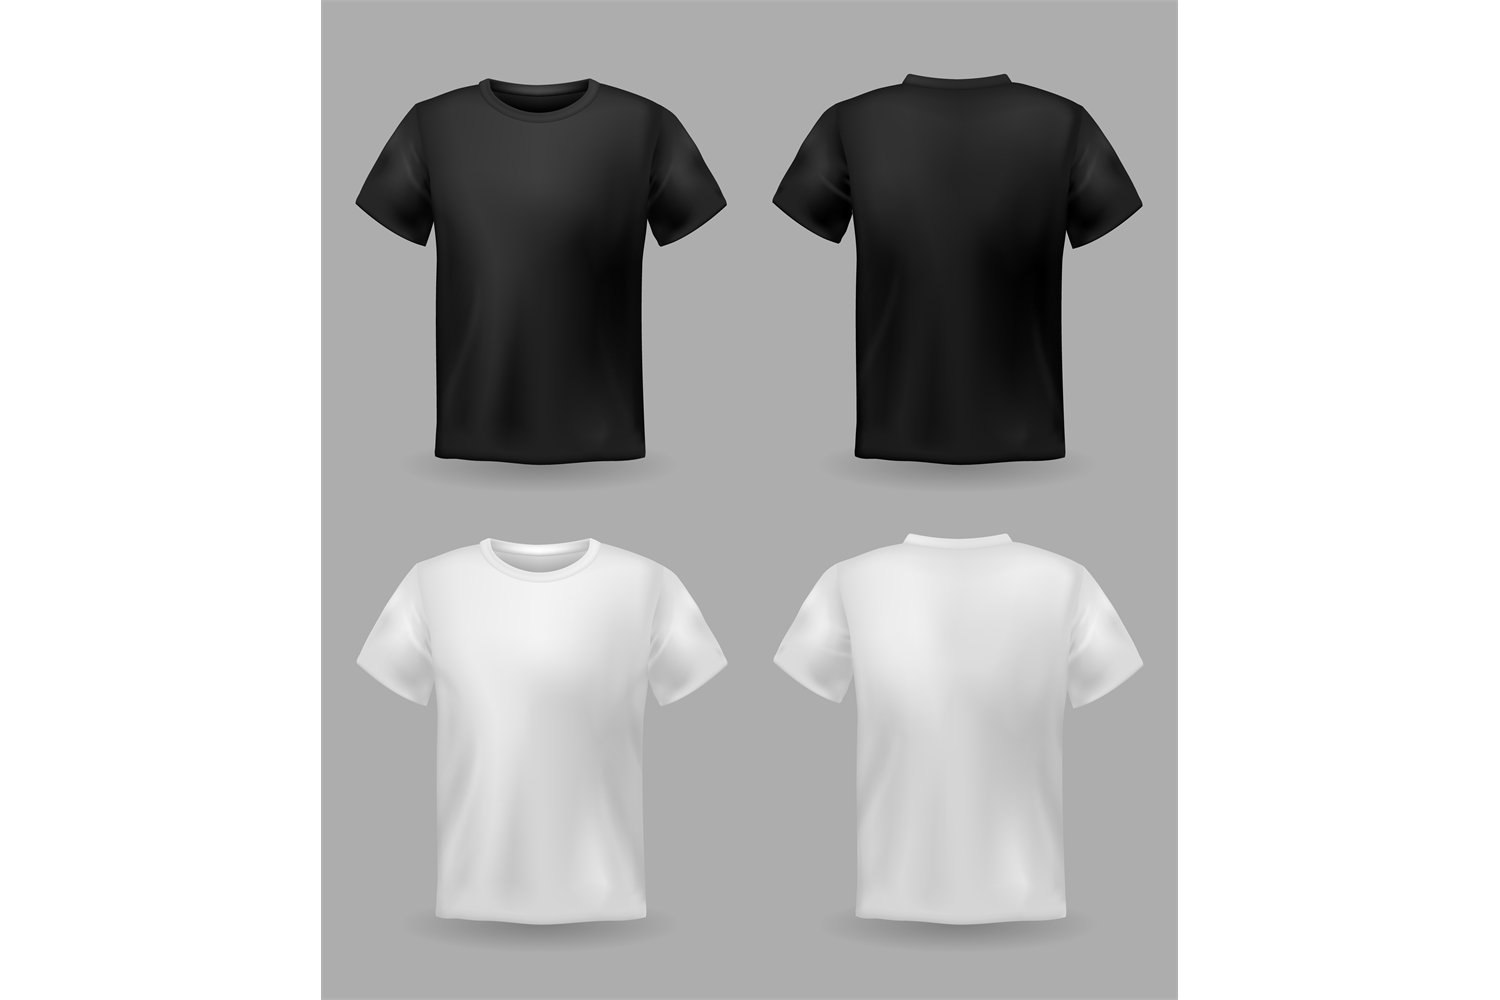 Купить базовые футболки хорошего качества. Белая и черная футболка. Футболка вид спереди.